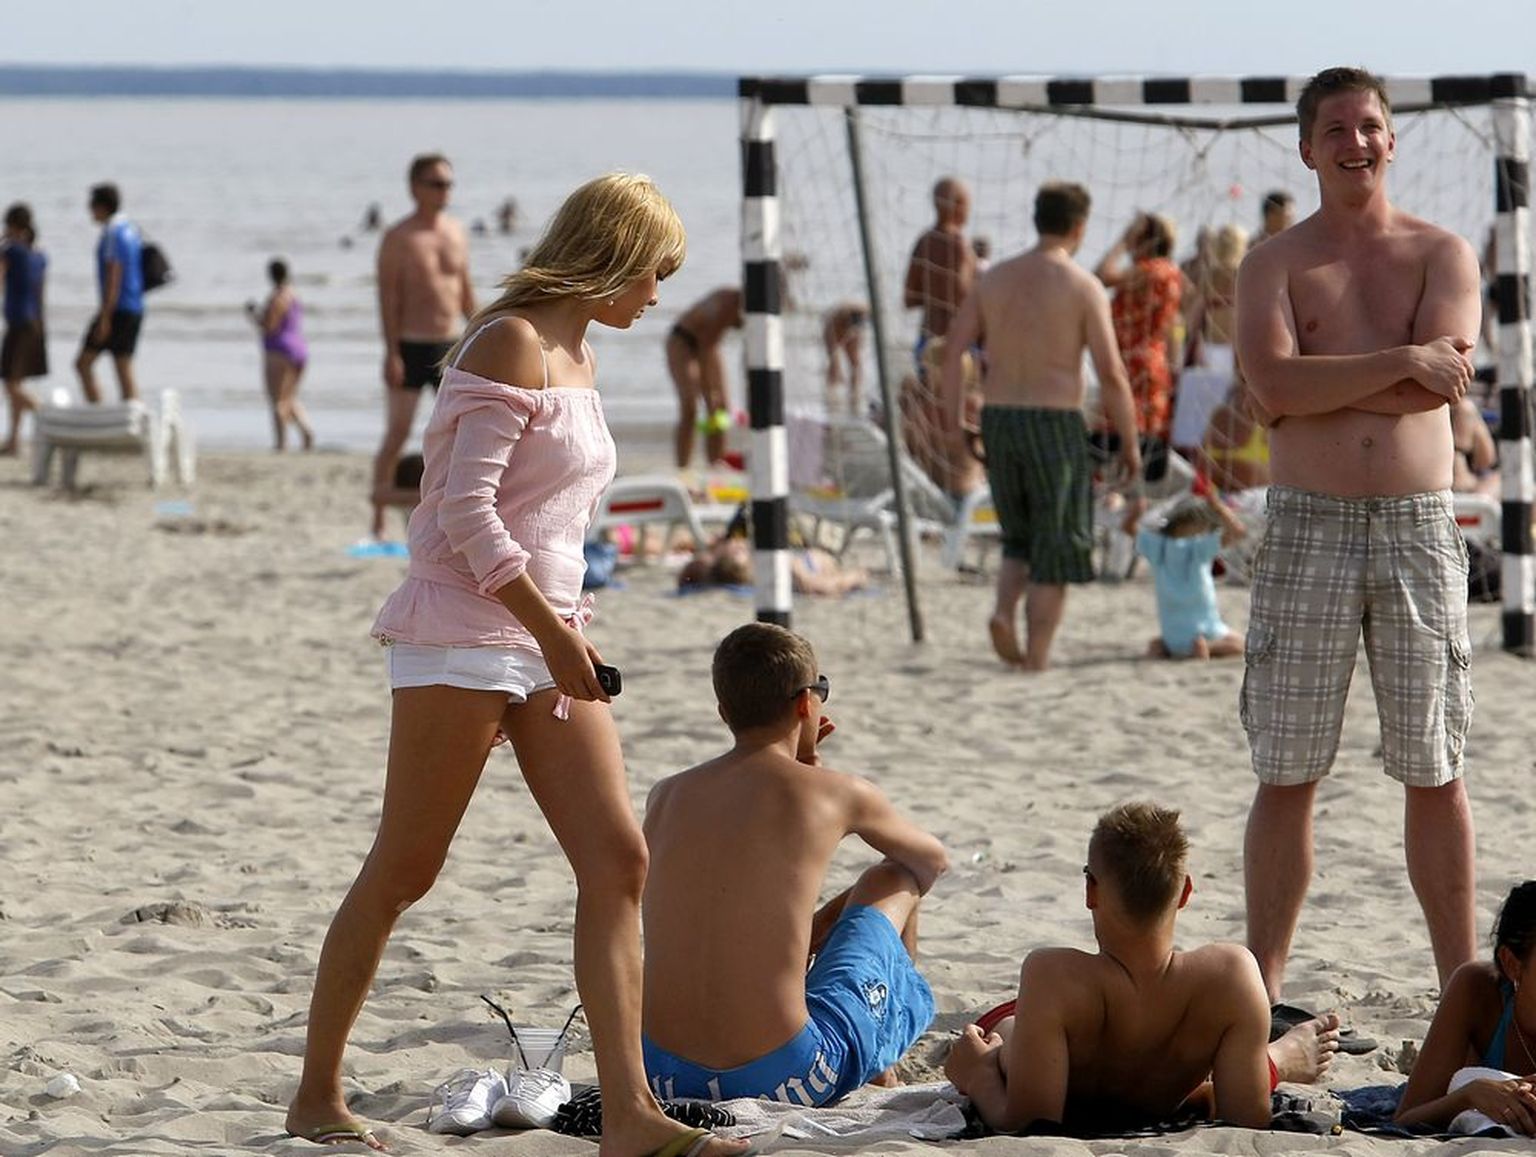 Ilmatüdruk Niki aka Kairit Tuhkanen veetis mõnusa nädalavahetuse koos poistega Pärnu rannas. Seksikate rannalõvide ridades oli ka meie esirokkar Tanel Padar.